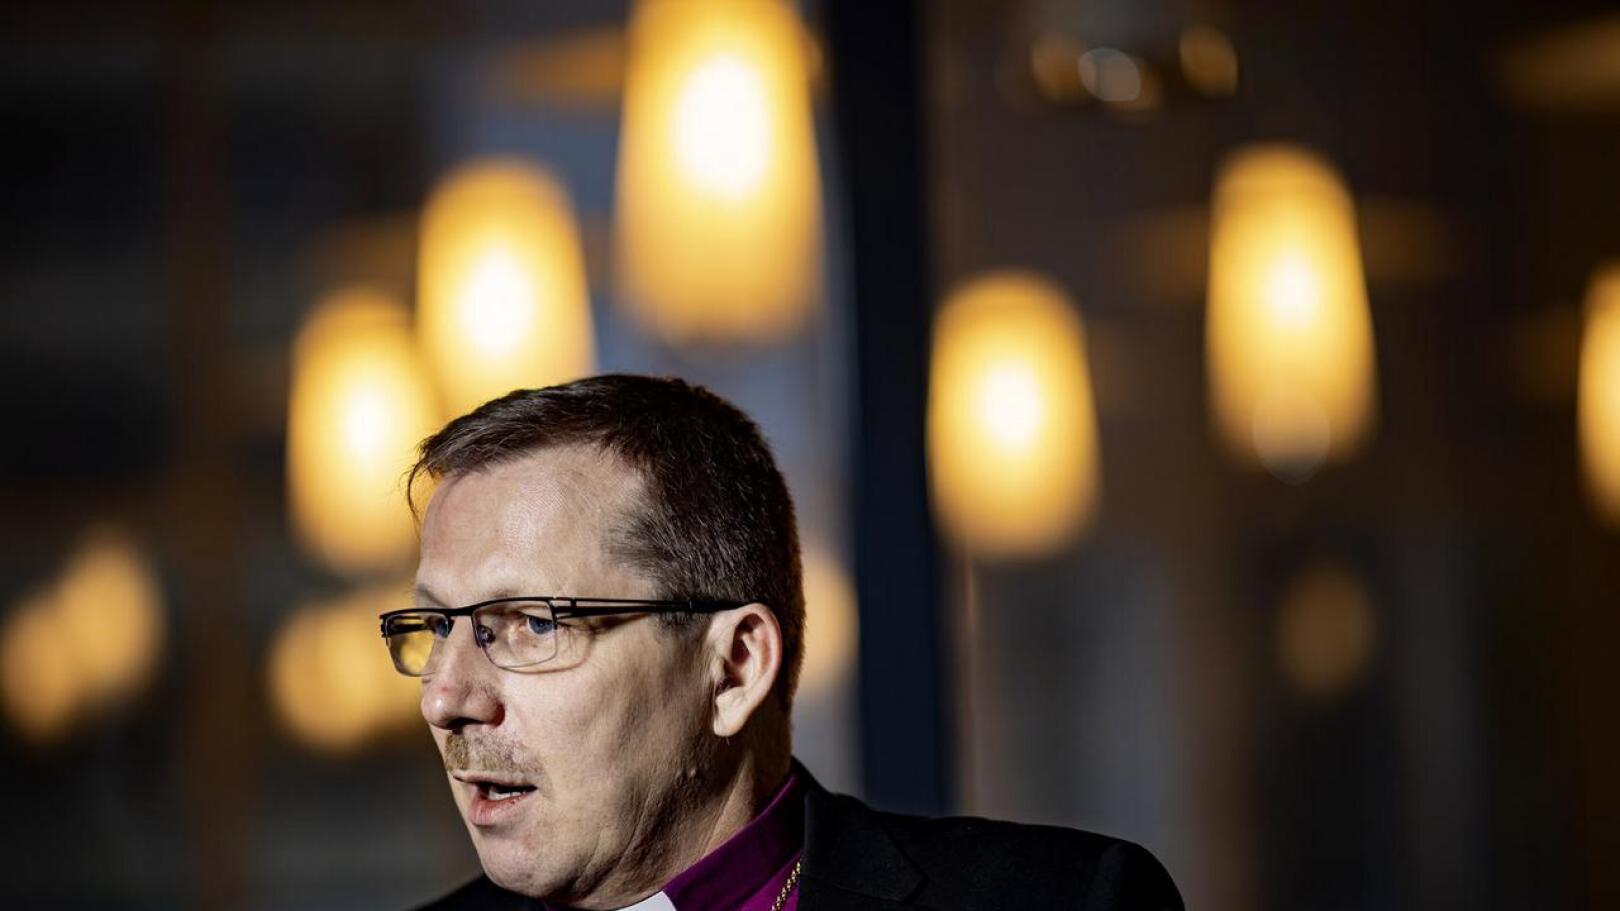 Piispa on huolissaan, että uskonnosta ja kirkon asemasta käyty keskustelu on viime vuosina kärjistynyt. 